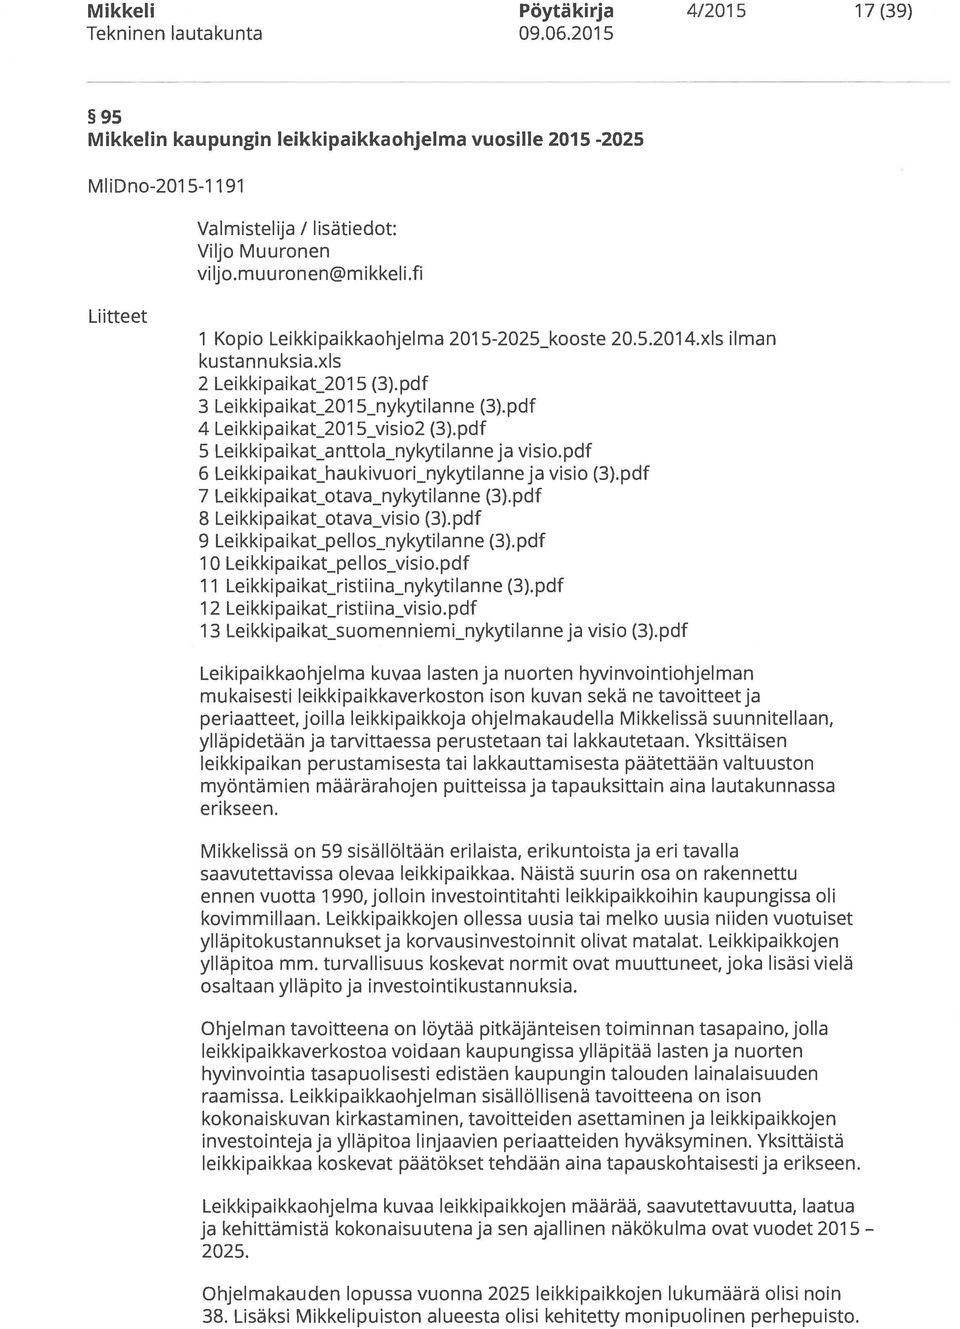 pdf 5 Leikkipaikat anttola nykytilanne ja visio.pdf 6 Leikkipaikat.haukivuorLnykytilanne ja visio (3).pdf 7 Leikkipaikat.otava nykytilanne (3).pdf 8 Leikkipaikat otava visio (3).